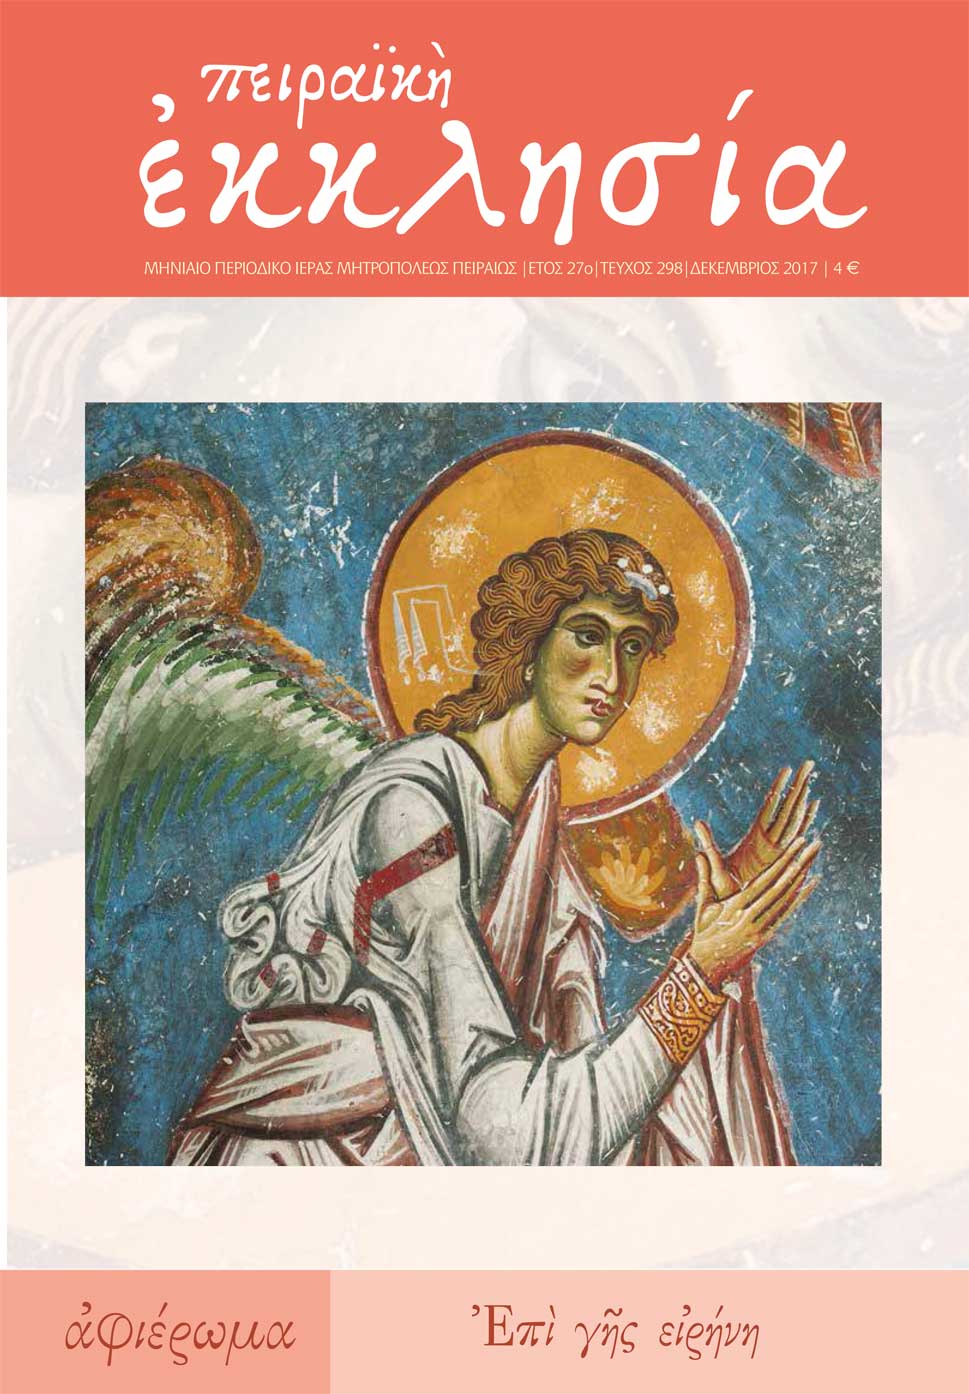 Κυκλοφόρησε το νέο τεύχος (τ. 298) του περιοδικού της Πειραϊκής Εκκλησίας